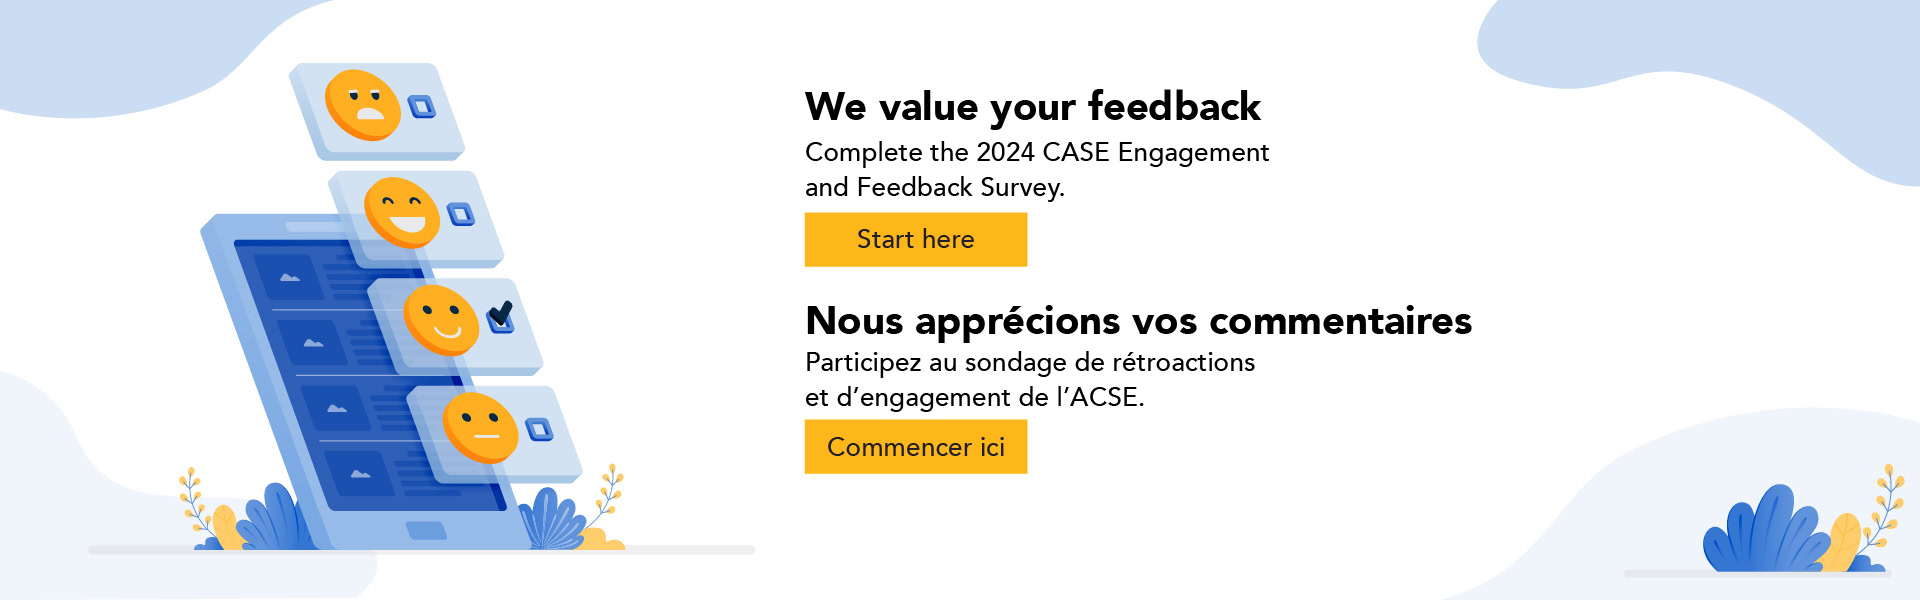 We value your feedback. Complete the 2024 CASE Engagement and Feedback Survey. Start Here. Nous apprécions vos commentaires. Participez au sondage de rétroactions et d'engagement de l'ACSE. Commencer ici